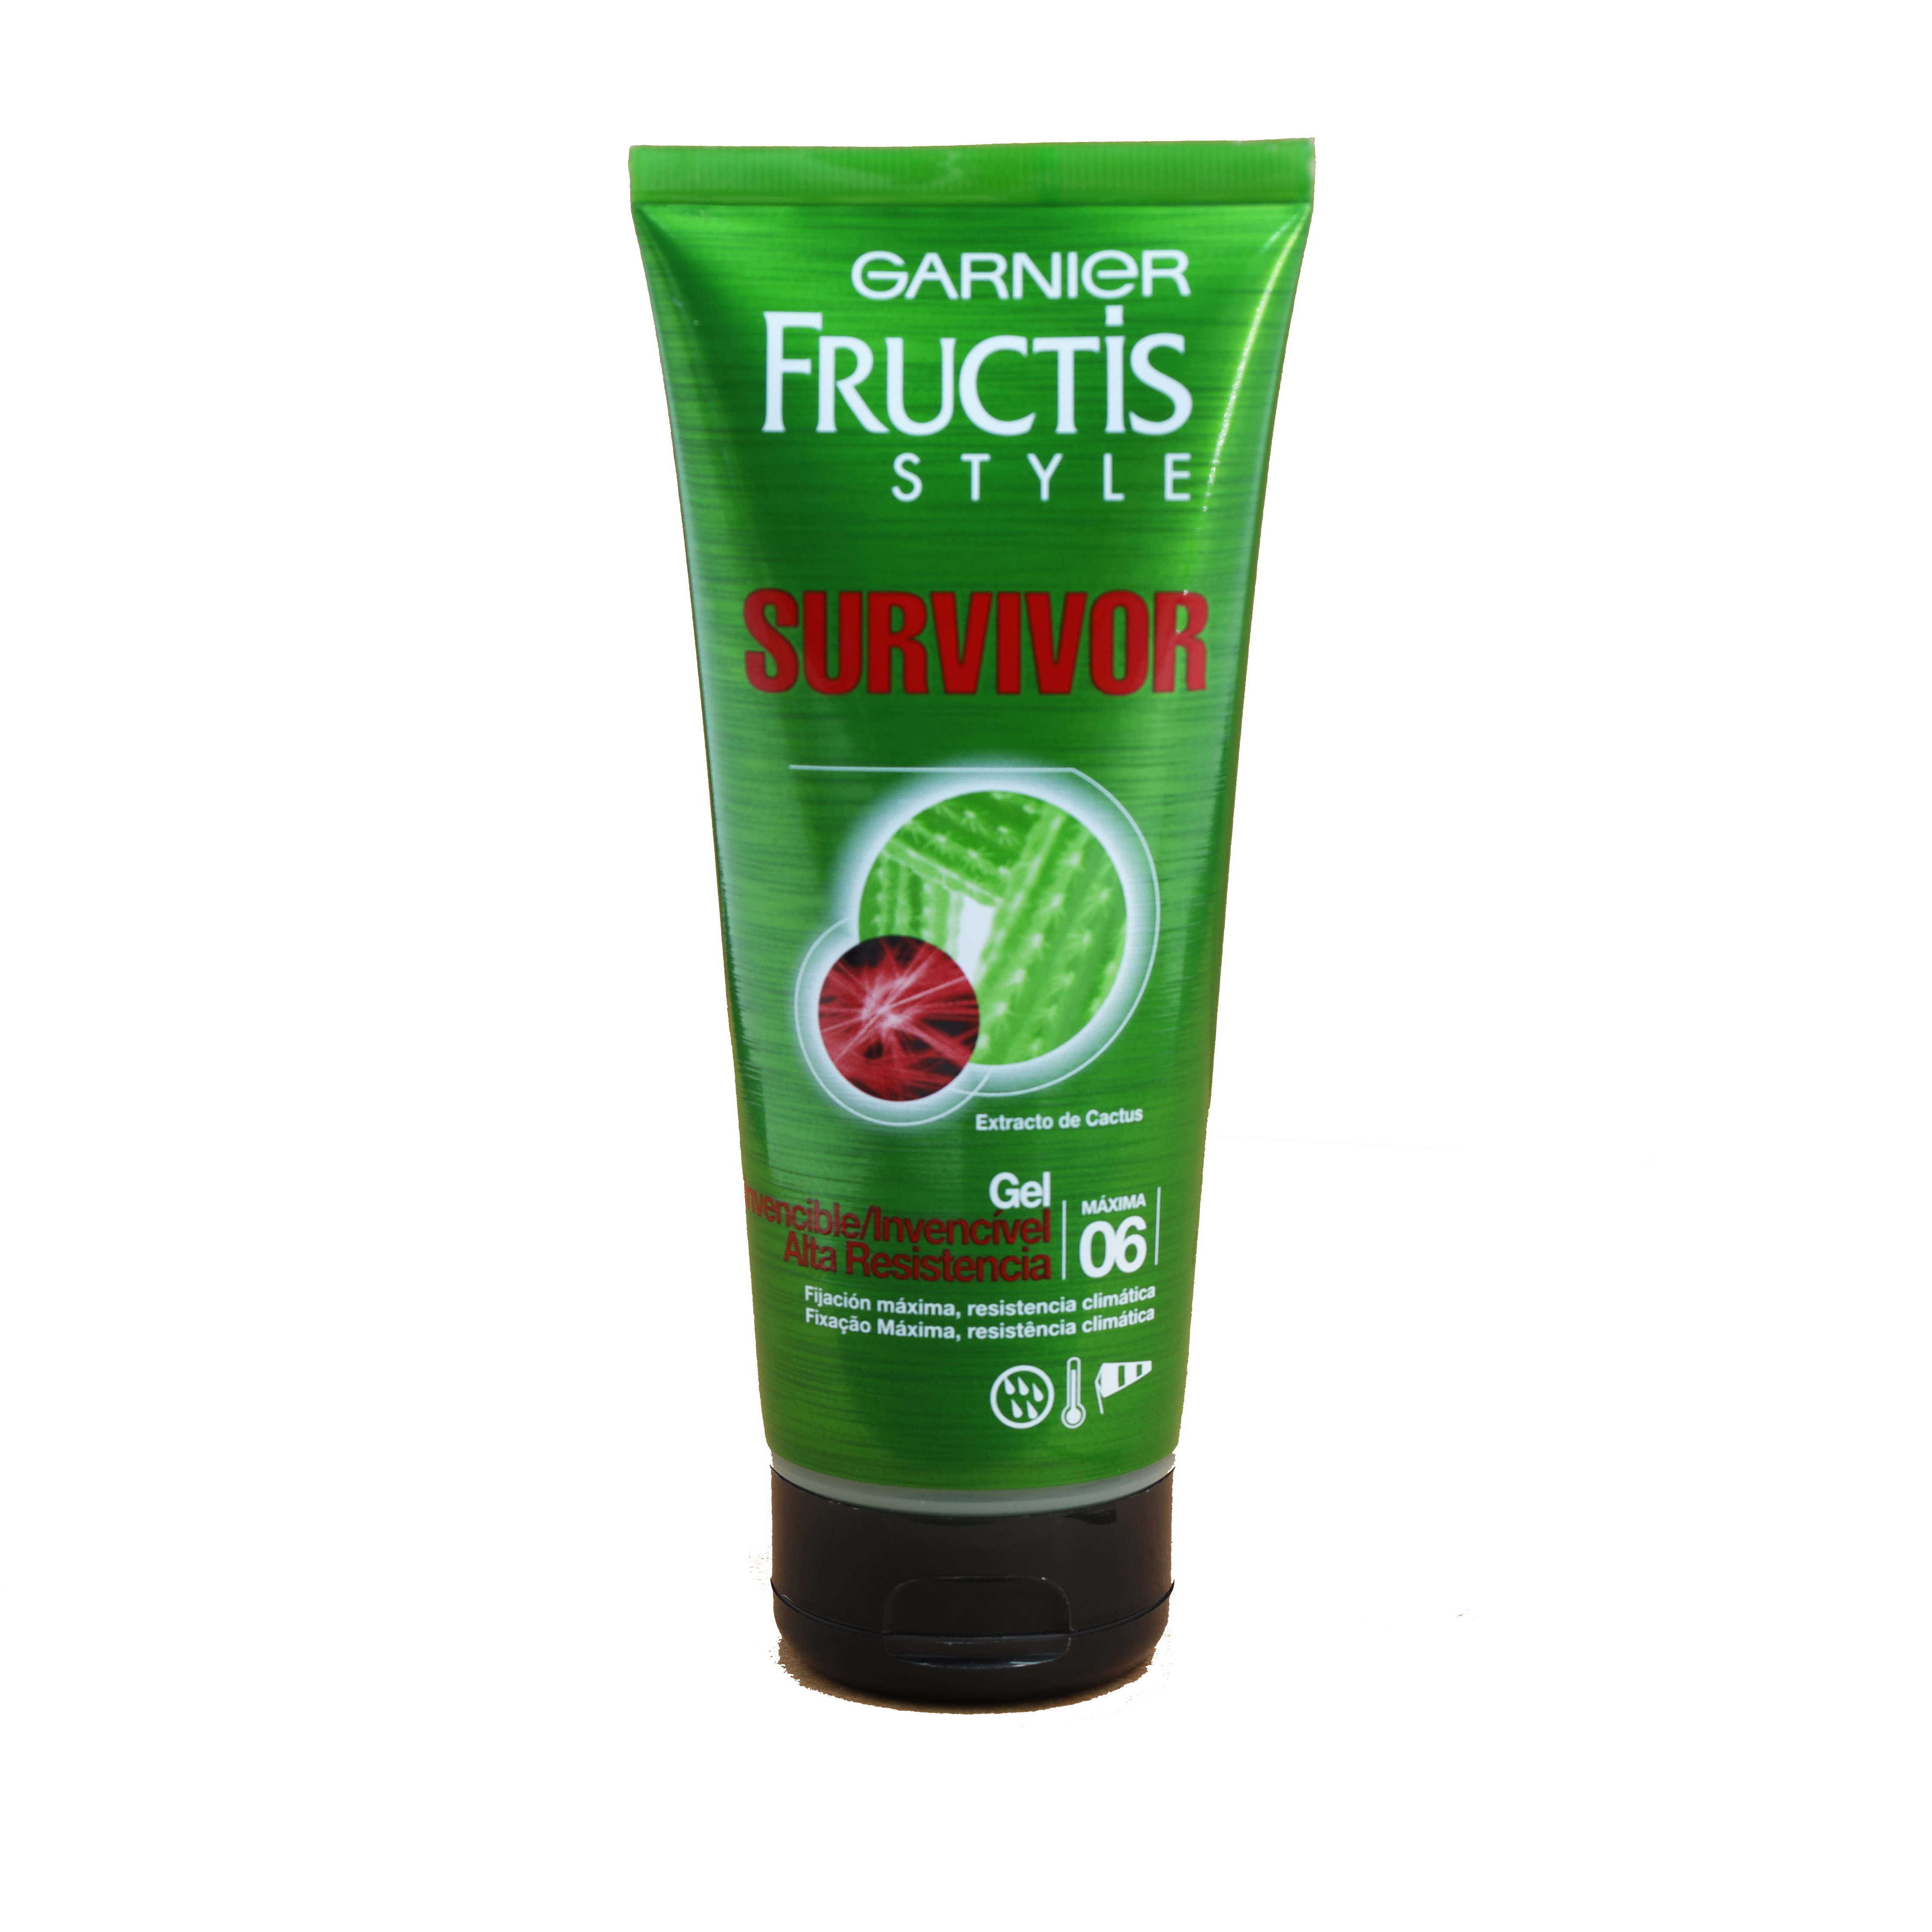 Garnier Fructis Style Survivor Haargel mit Kaktusextrakt 200ml Hold 6